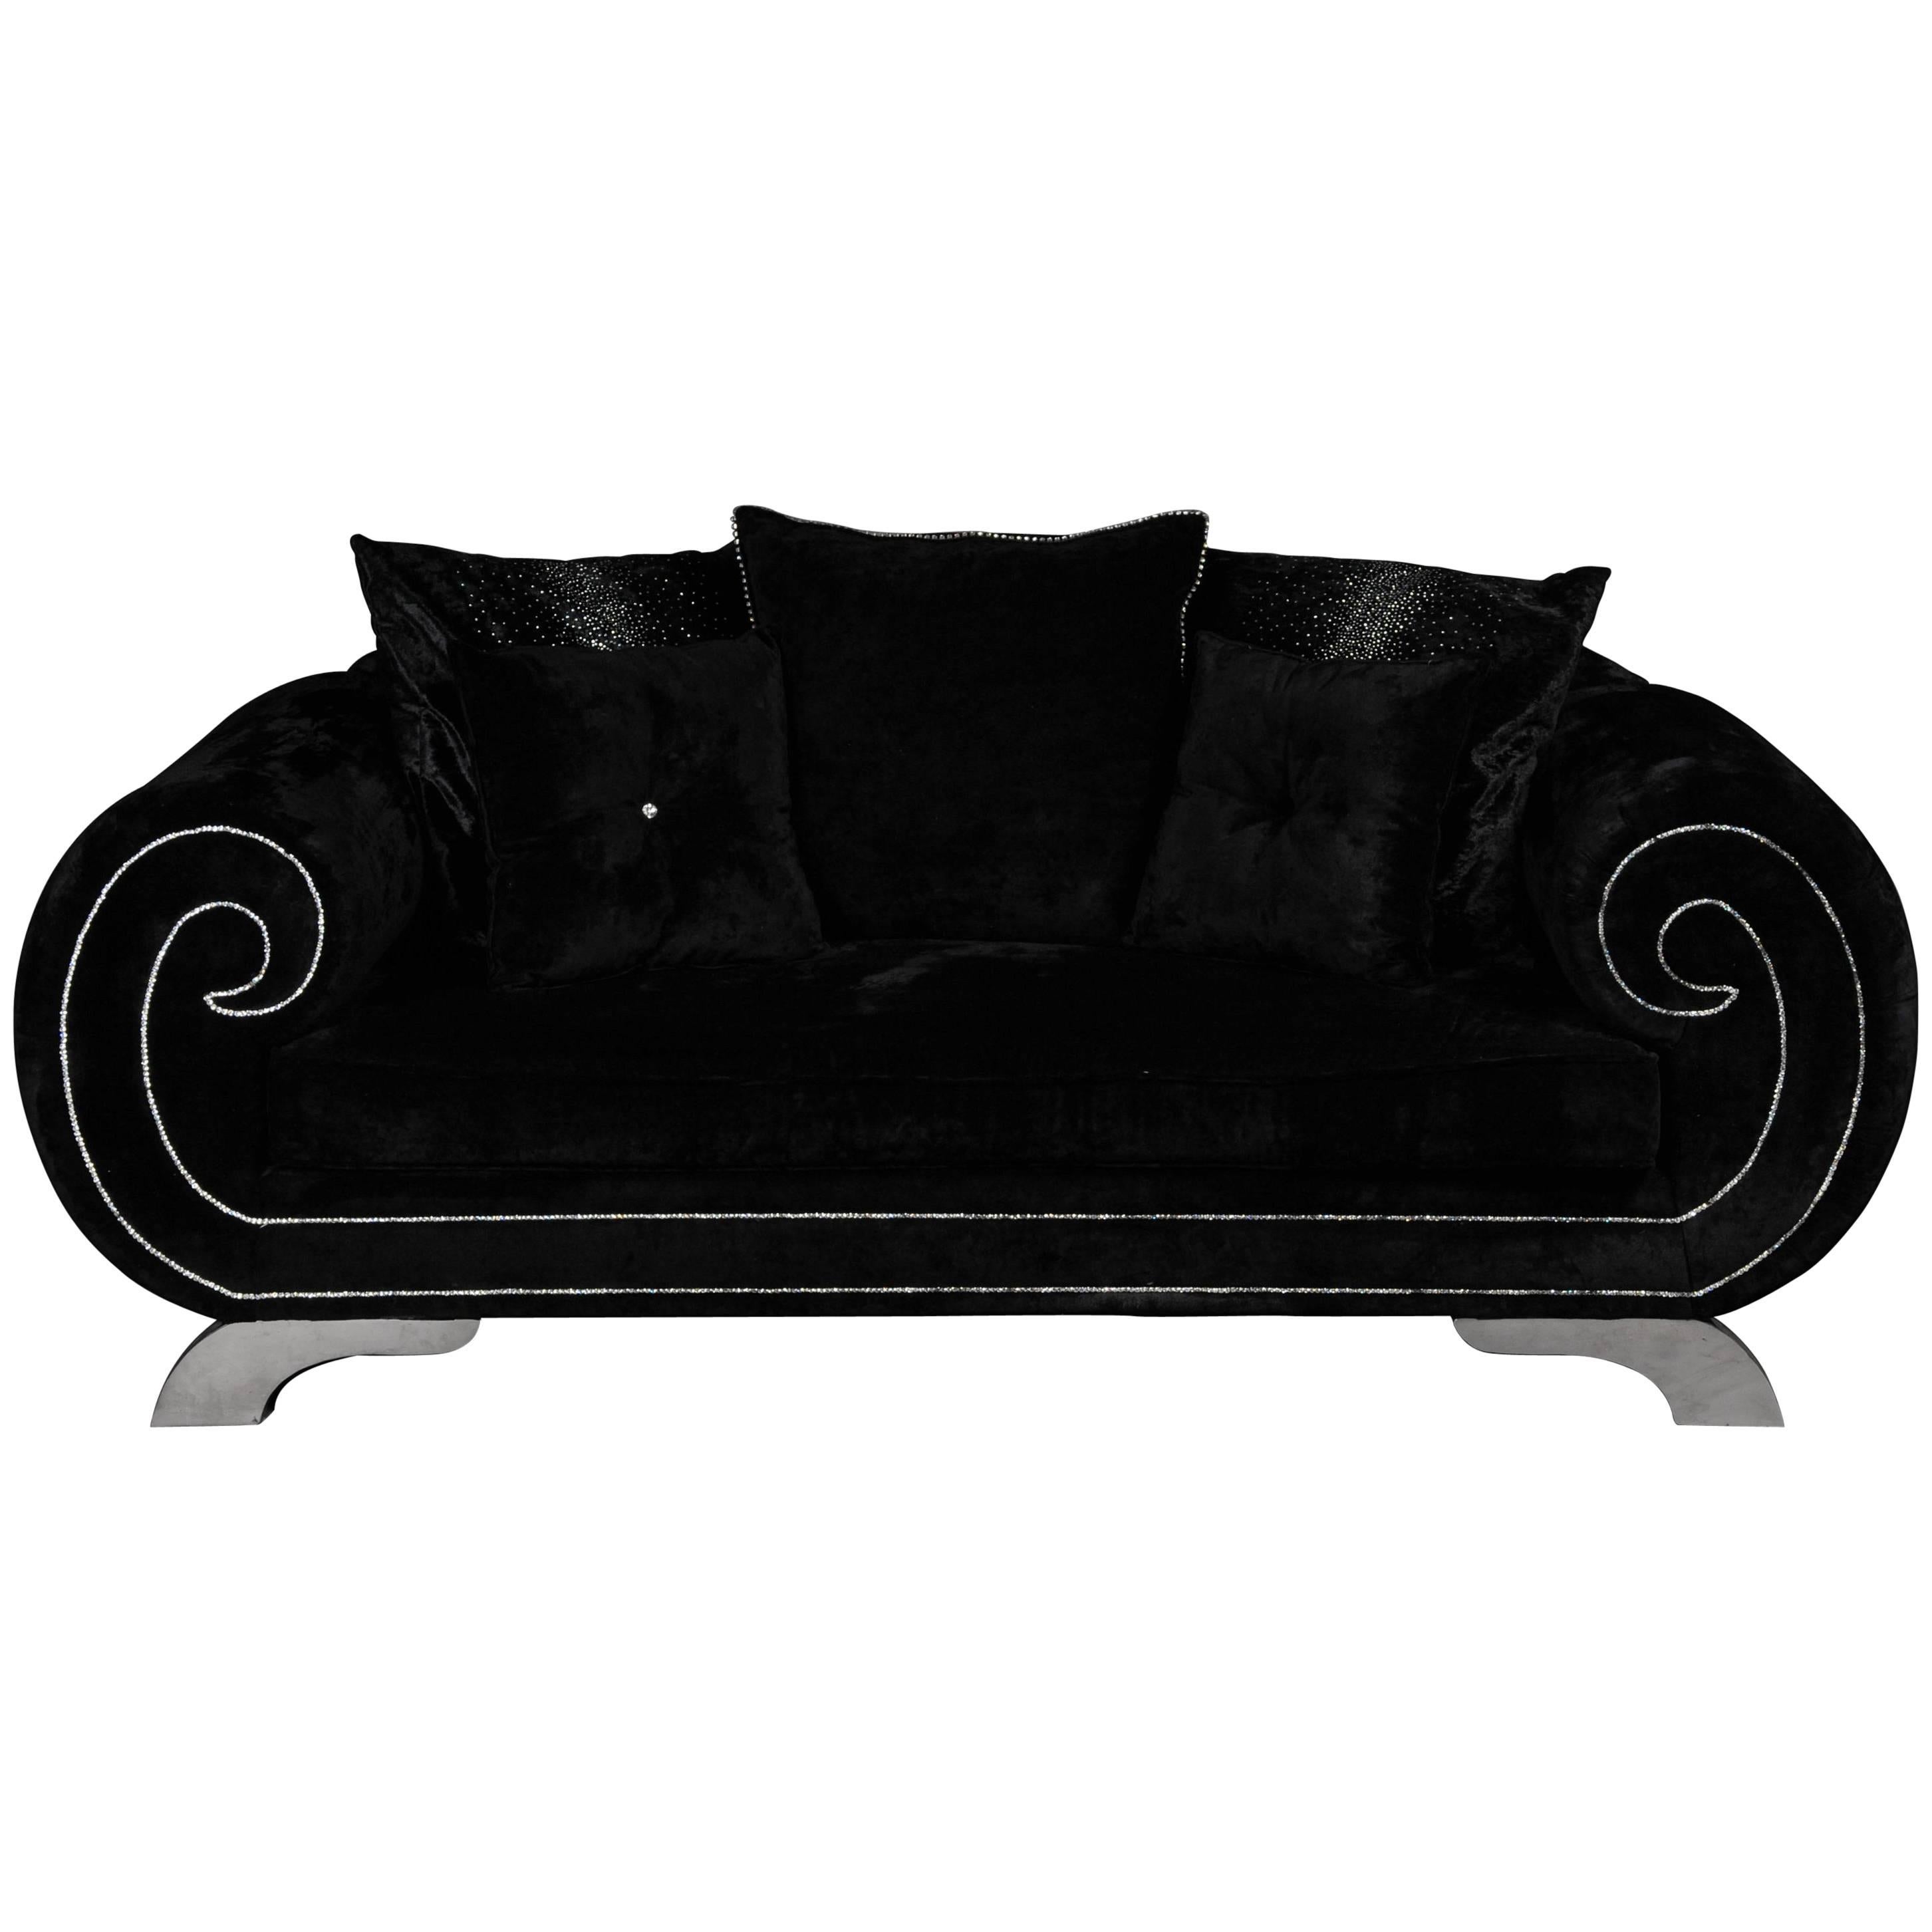 Canapé ou pochette de designer unique et luxueux, strass et velours noir. l'exceptionnalité